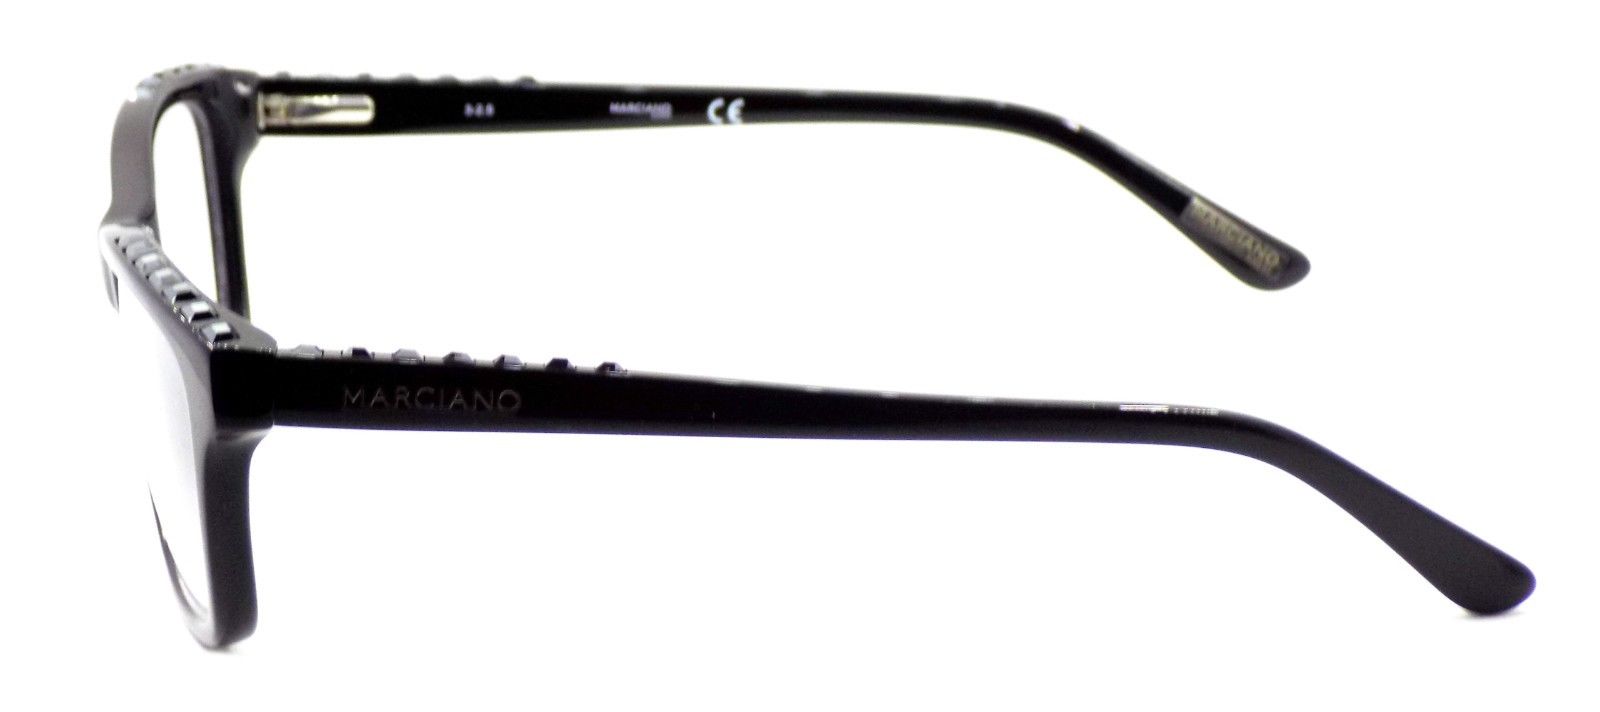 3-GUESS by Marciano GM0283 001 Women's Eyeglasses Frames 53-16-135 Black + Case-664689779857-IKSpecs